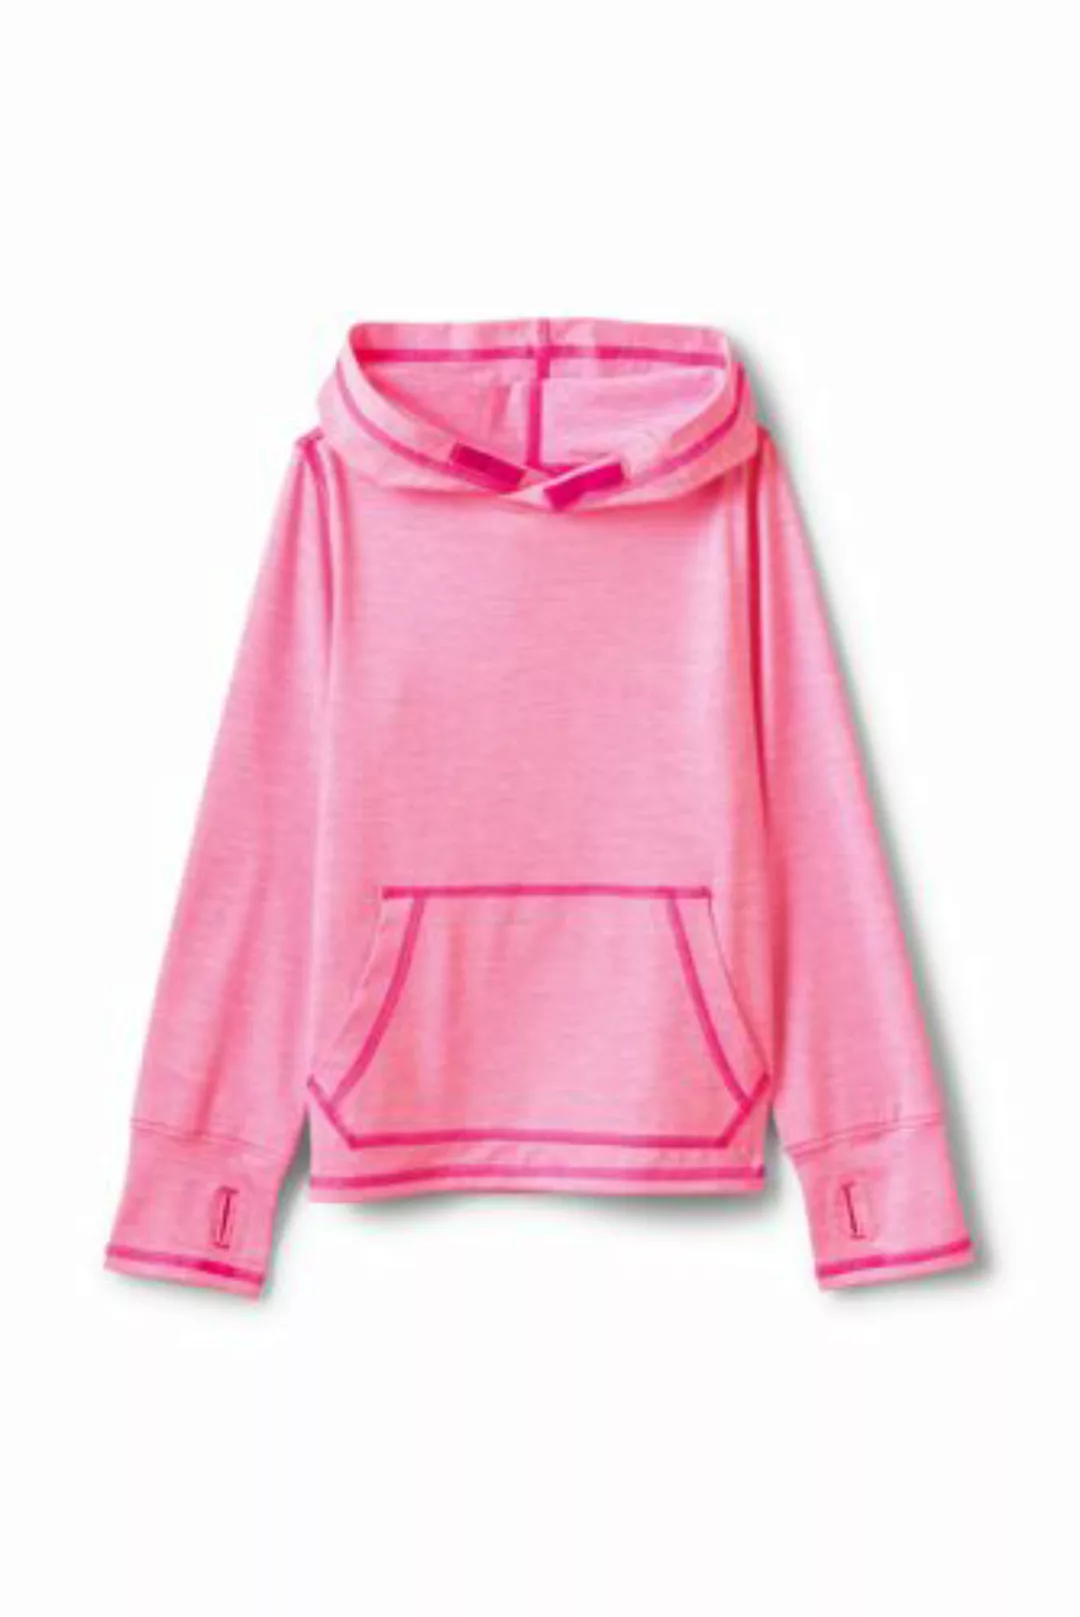 Aktiv-Kapuzenshirt, Größe: 128-134, Pink, Polyester-Mischung, by Lands' End günstig online kaufen